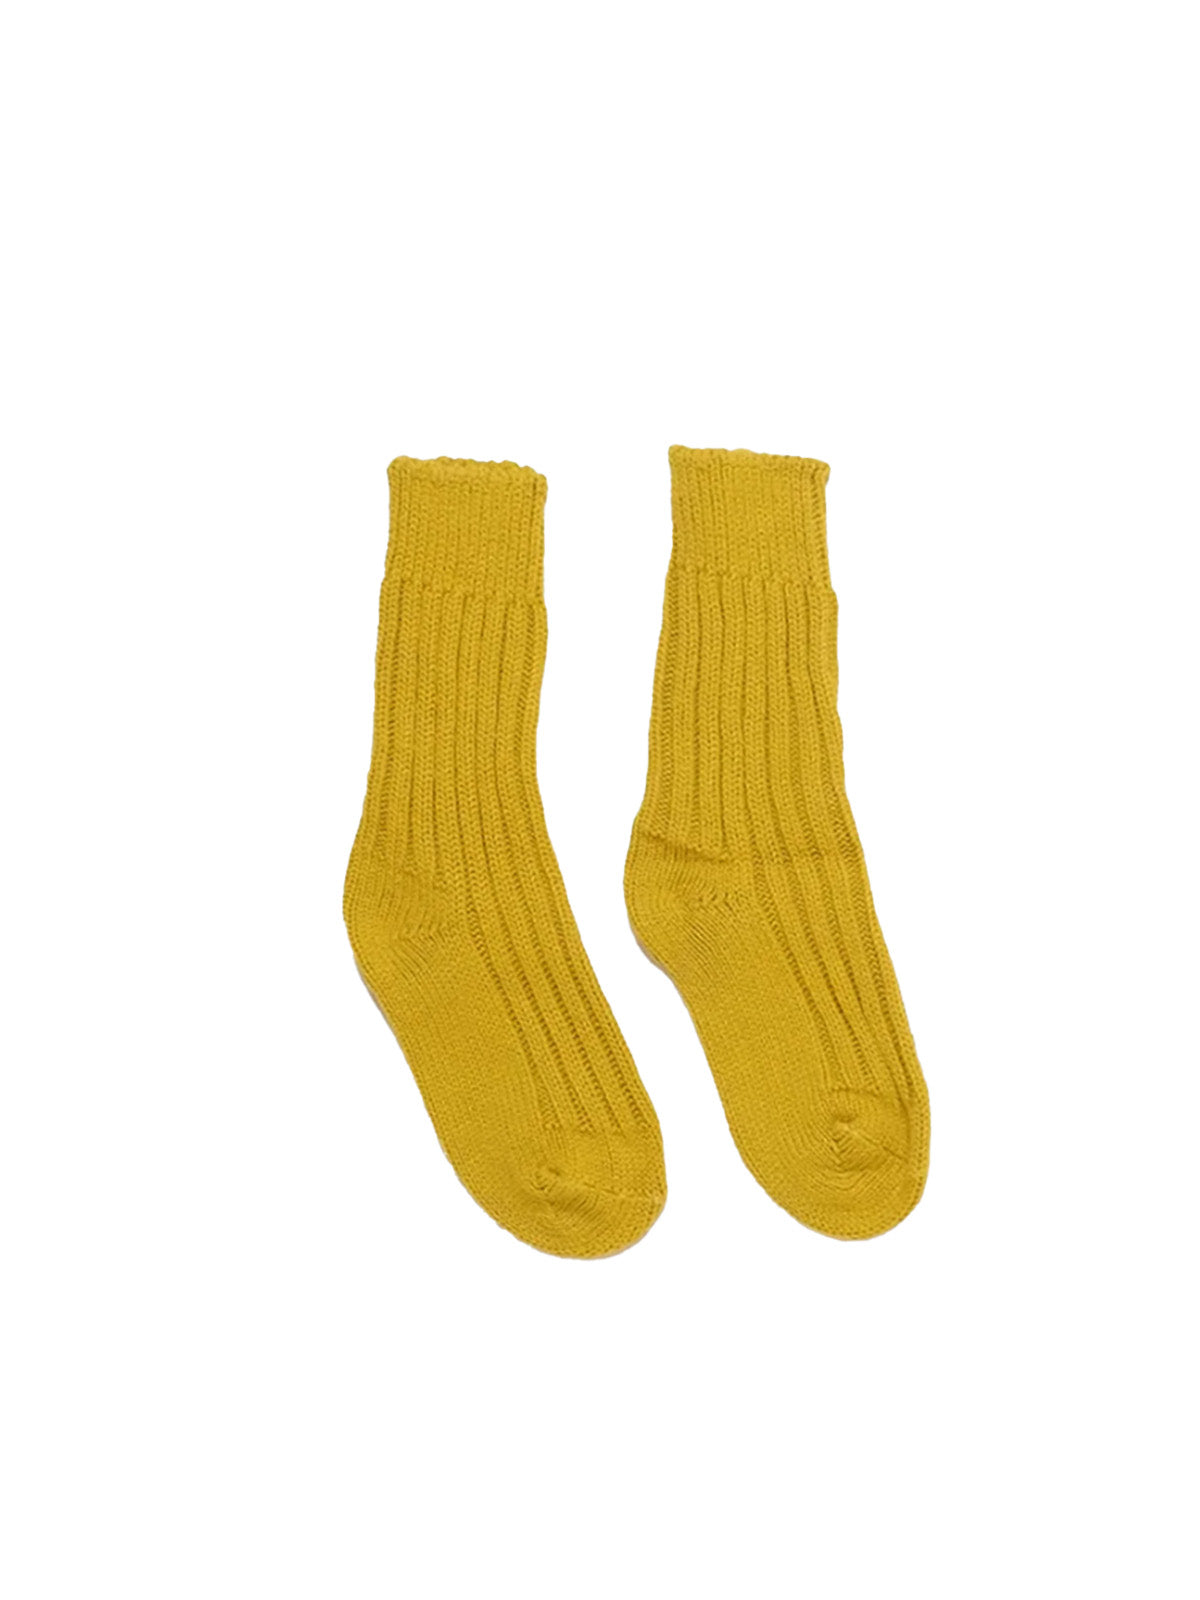 Yosemite Socks - Yellow